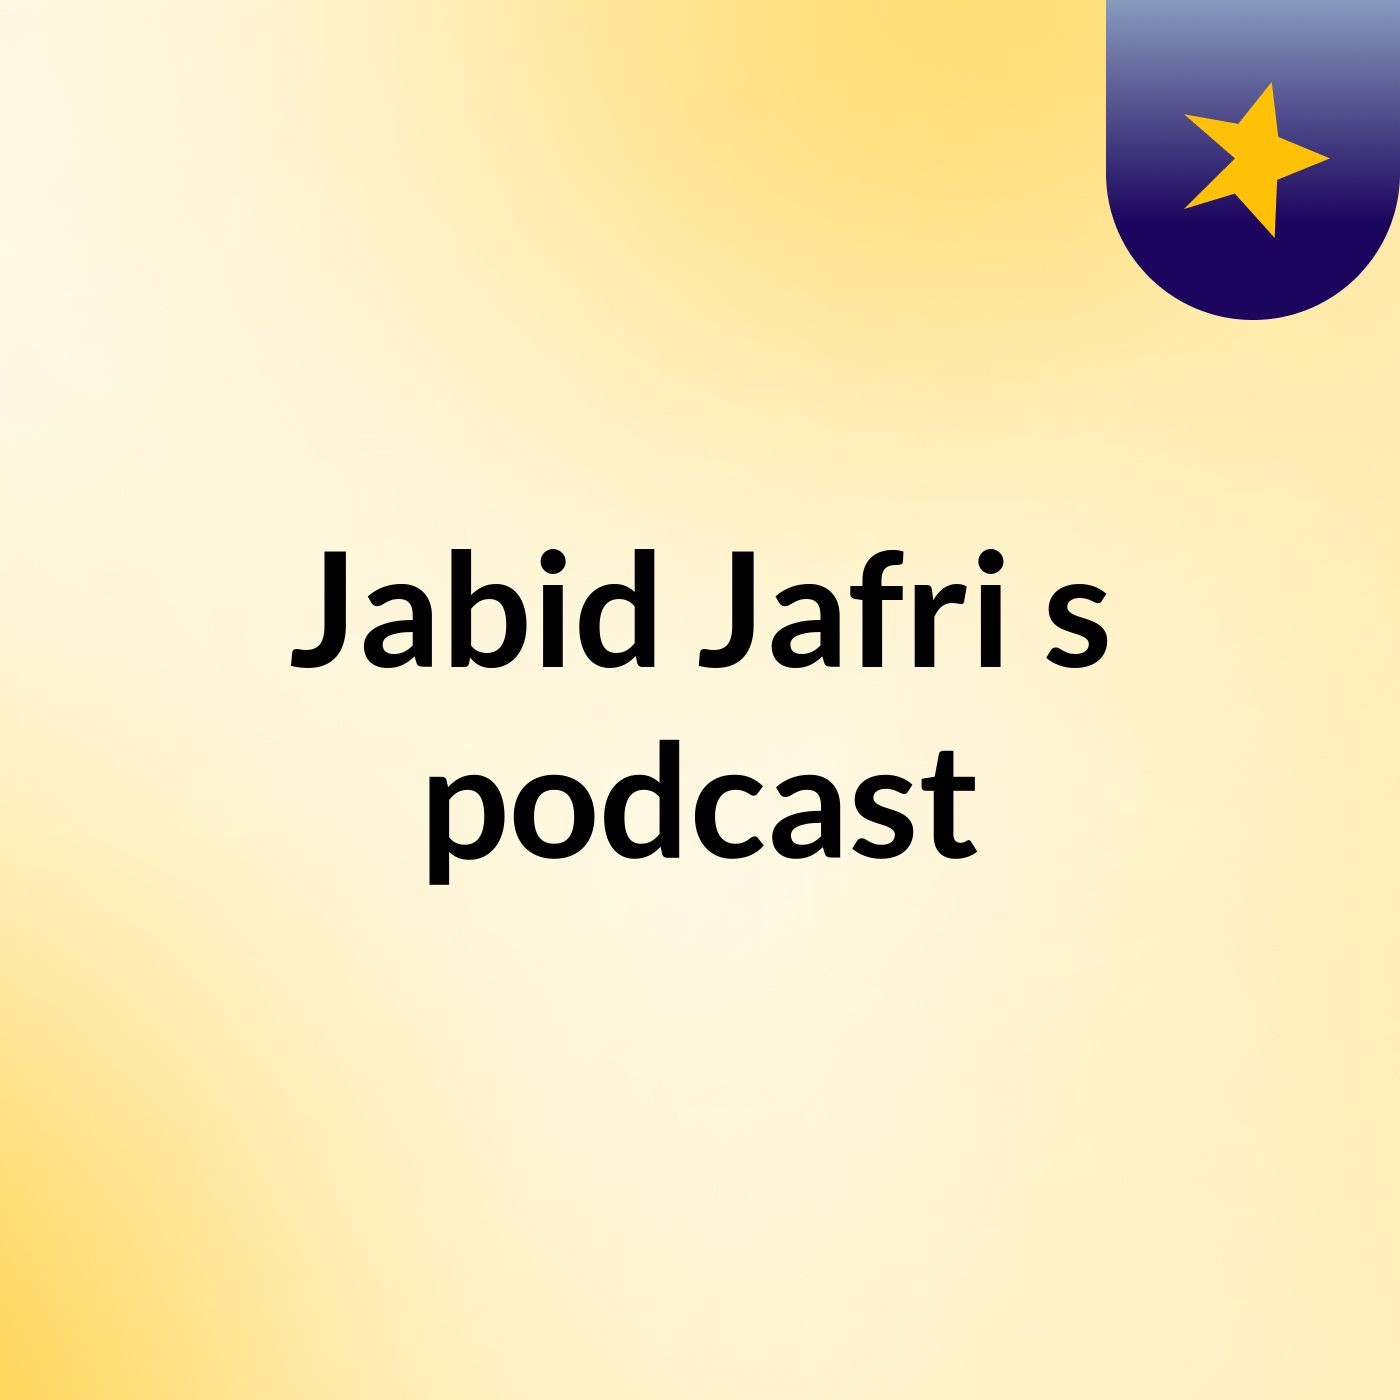 Jadib Jafri